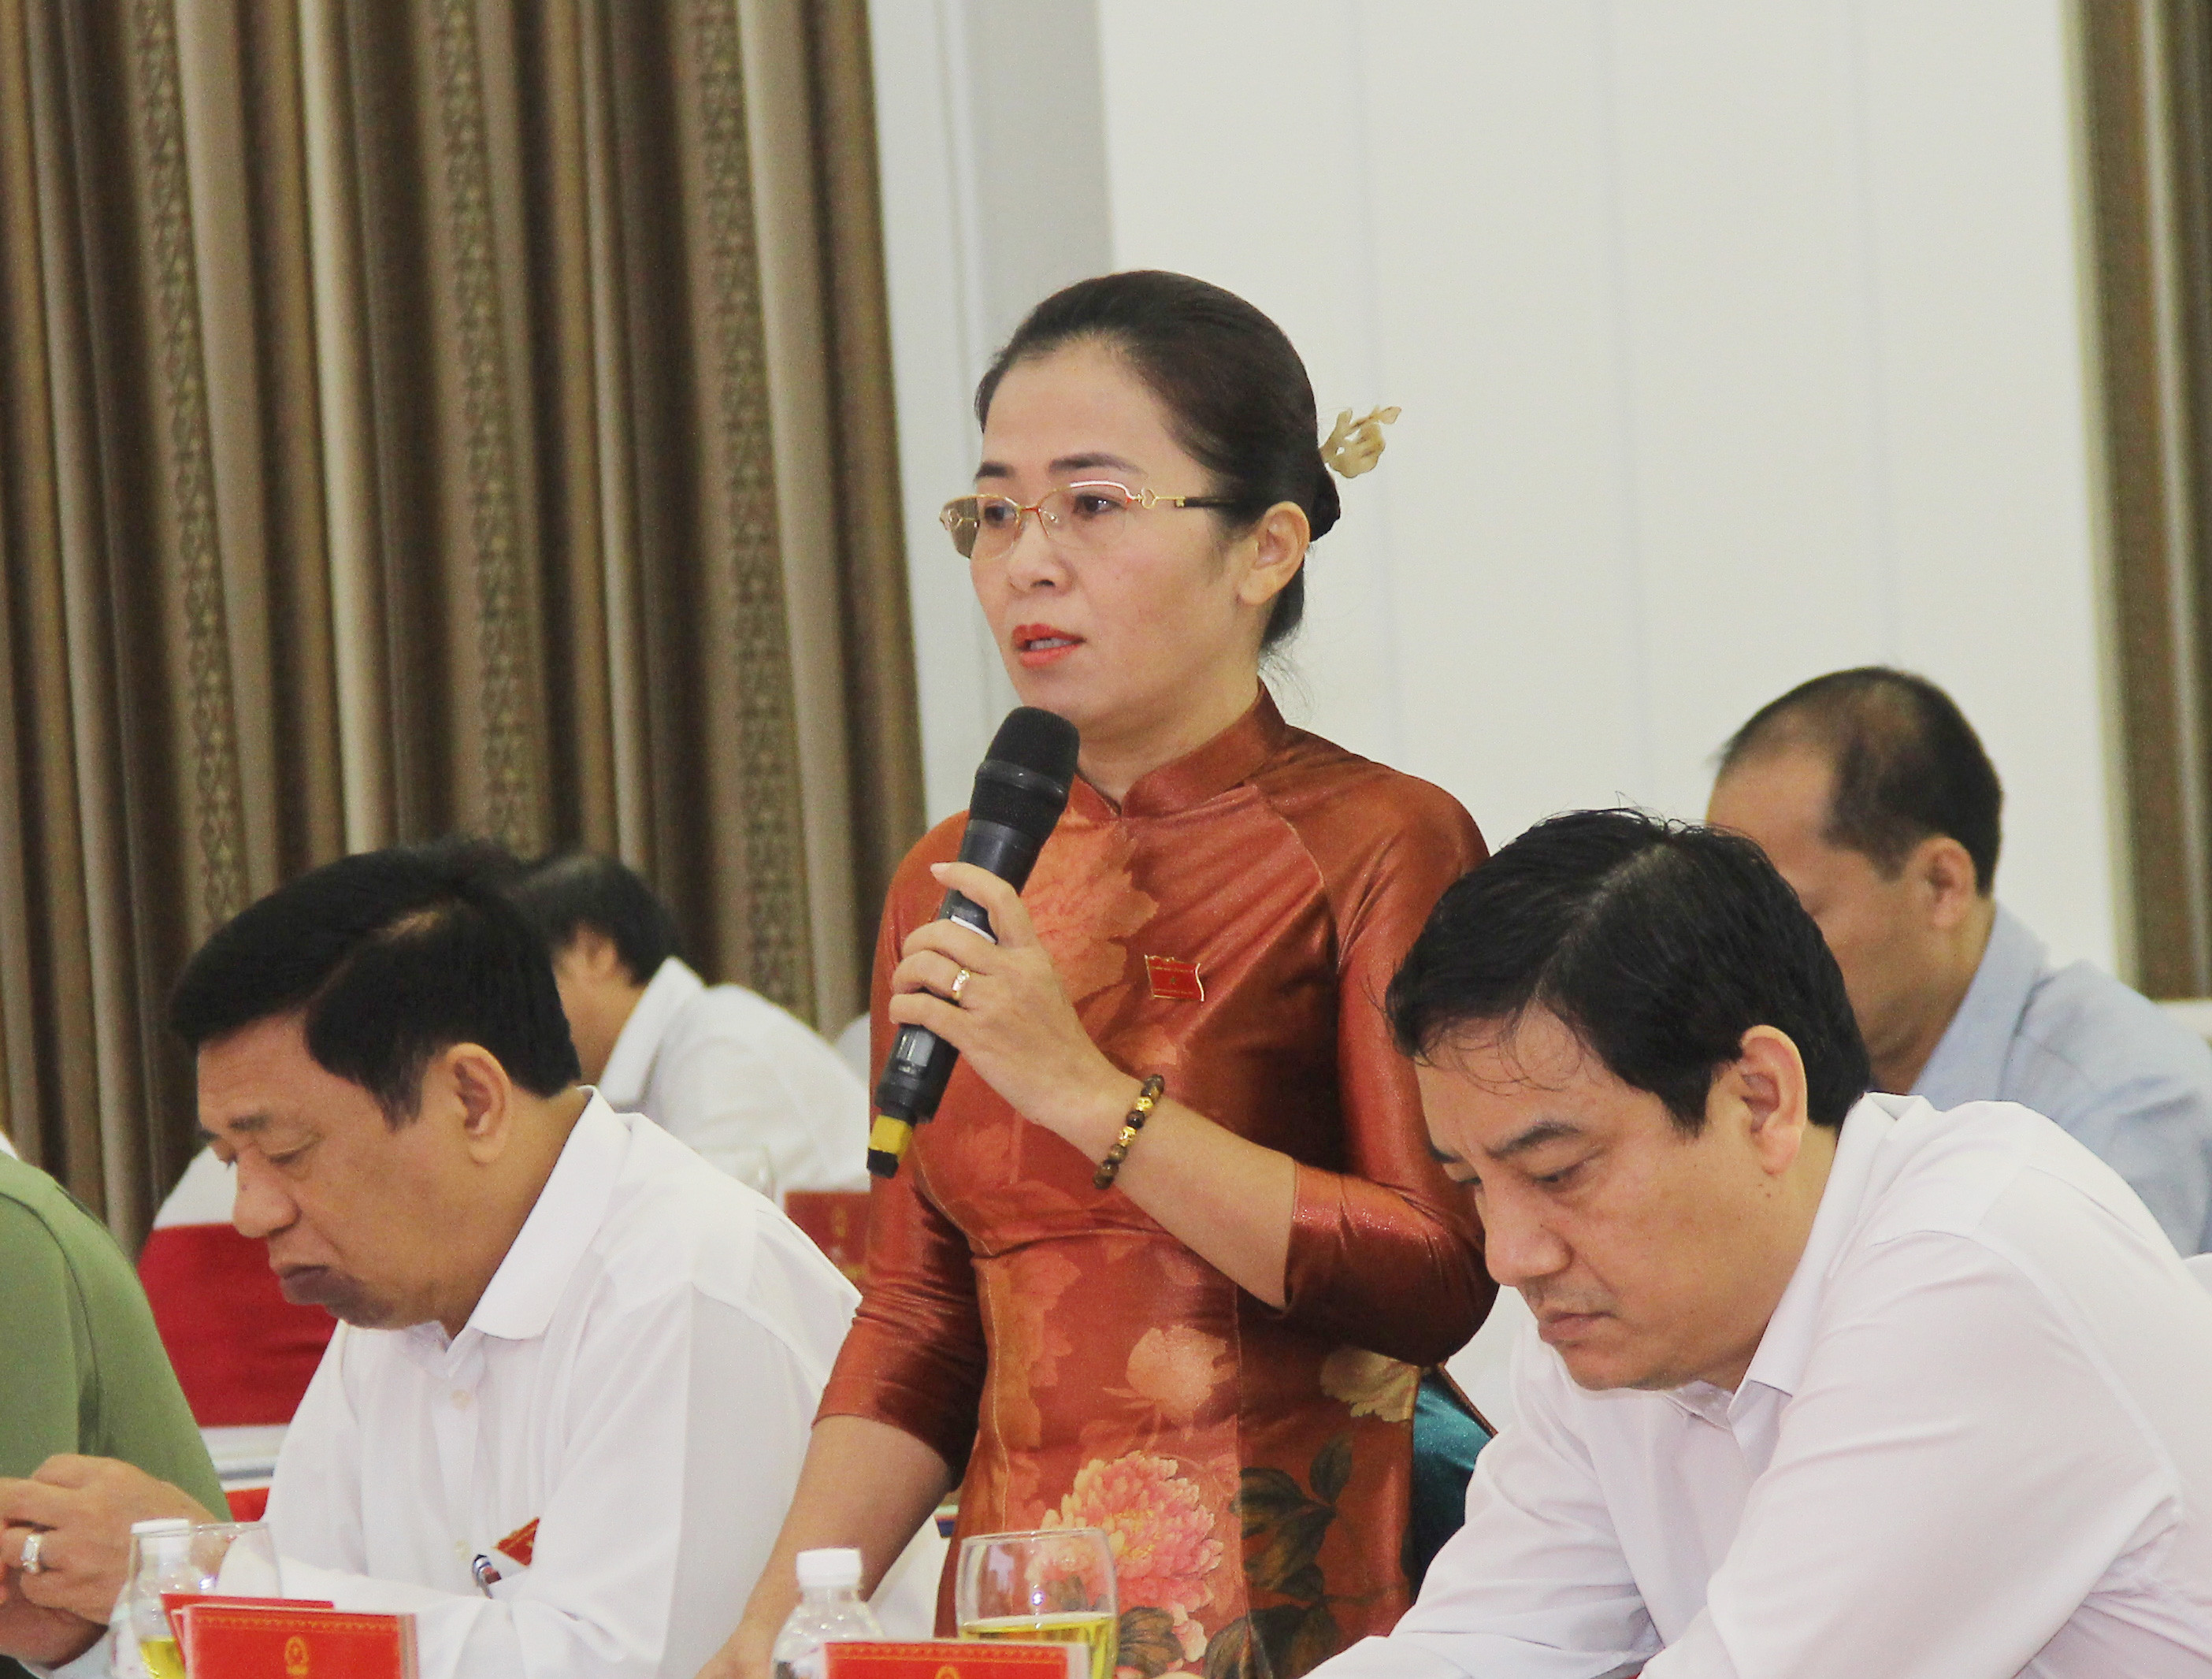 Đại biểu Võ Thị Minh Sinh cho rằng, chính sách cần đảm bảo công bằng, tránh cào bằng giữa các đối tượng. Ảnh: Mai Hoa